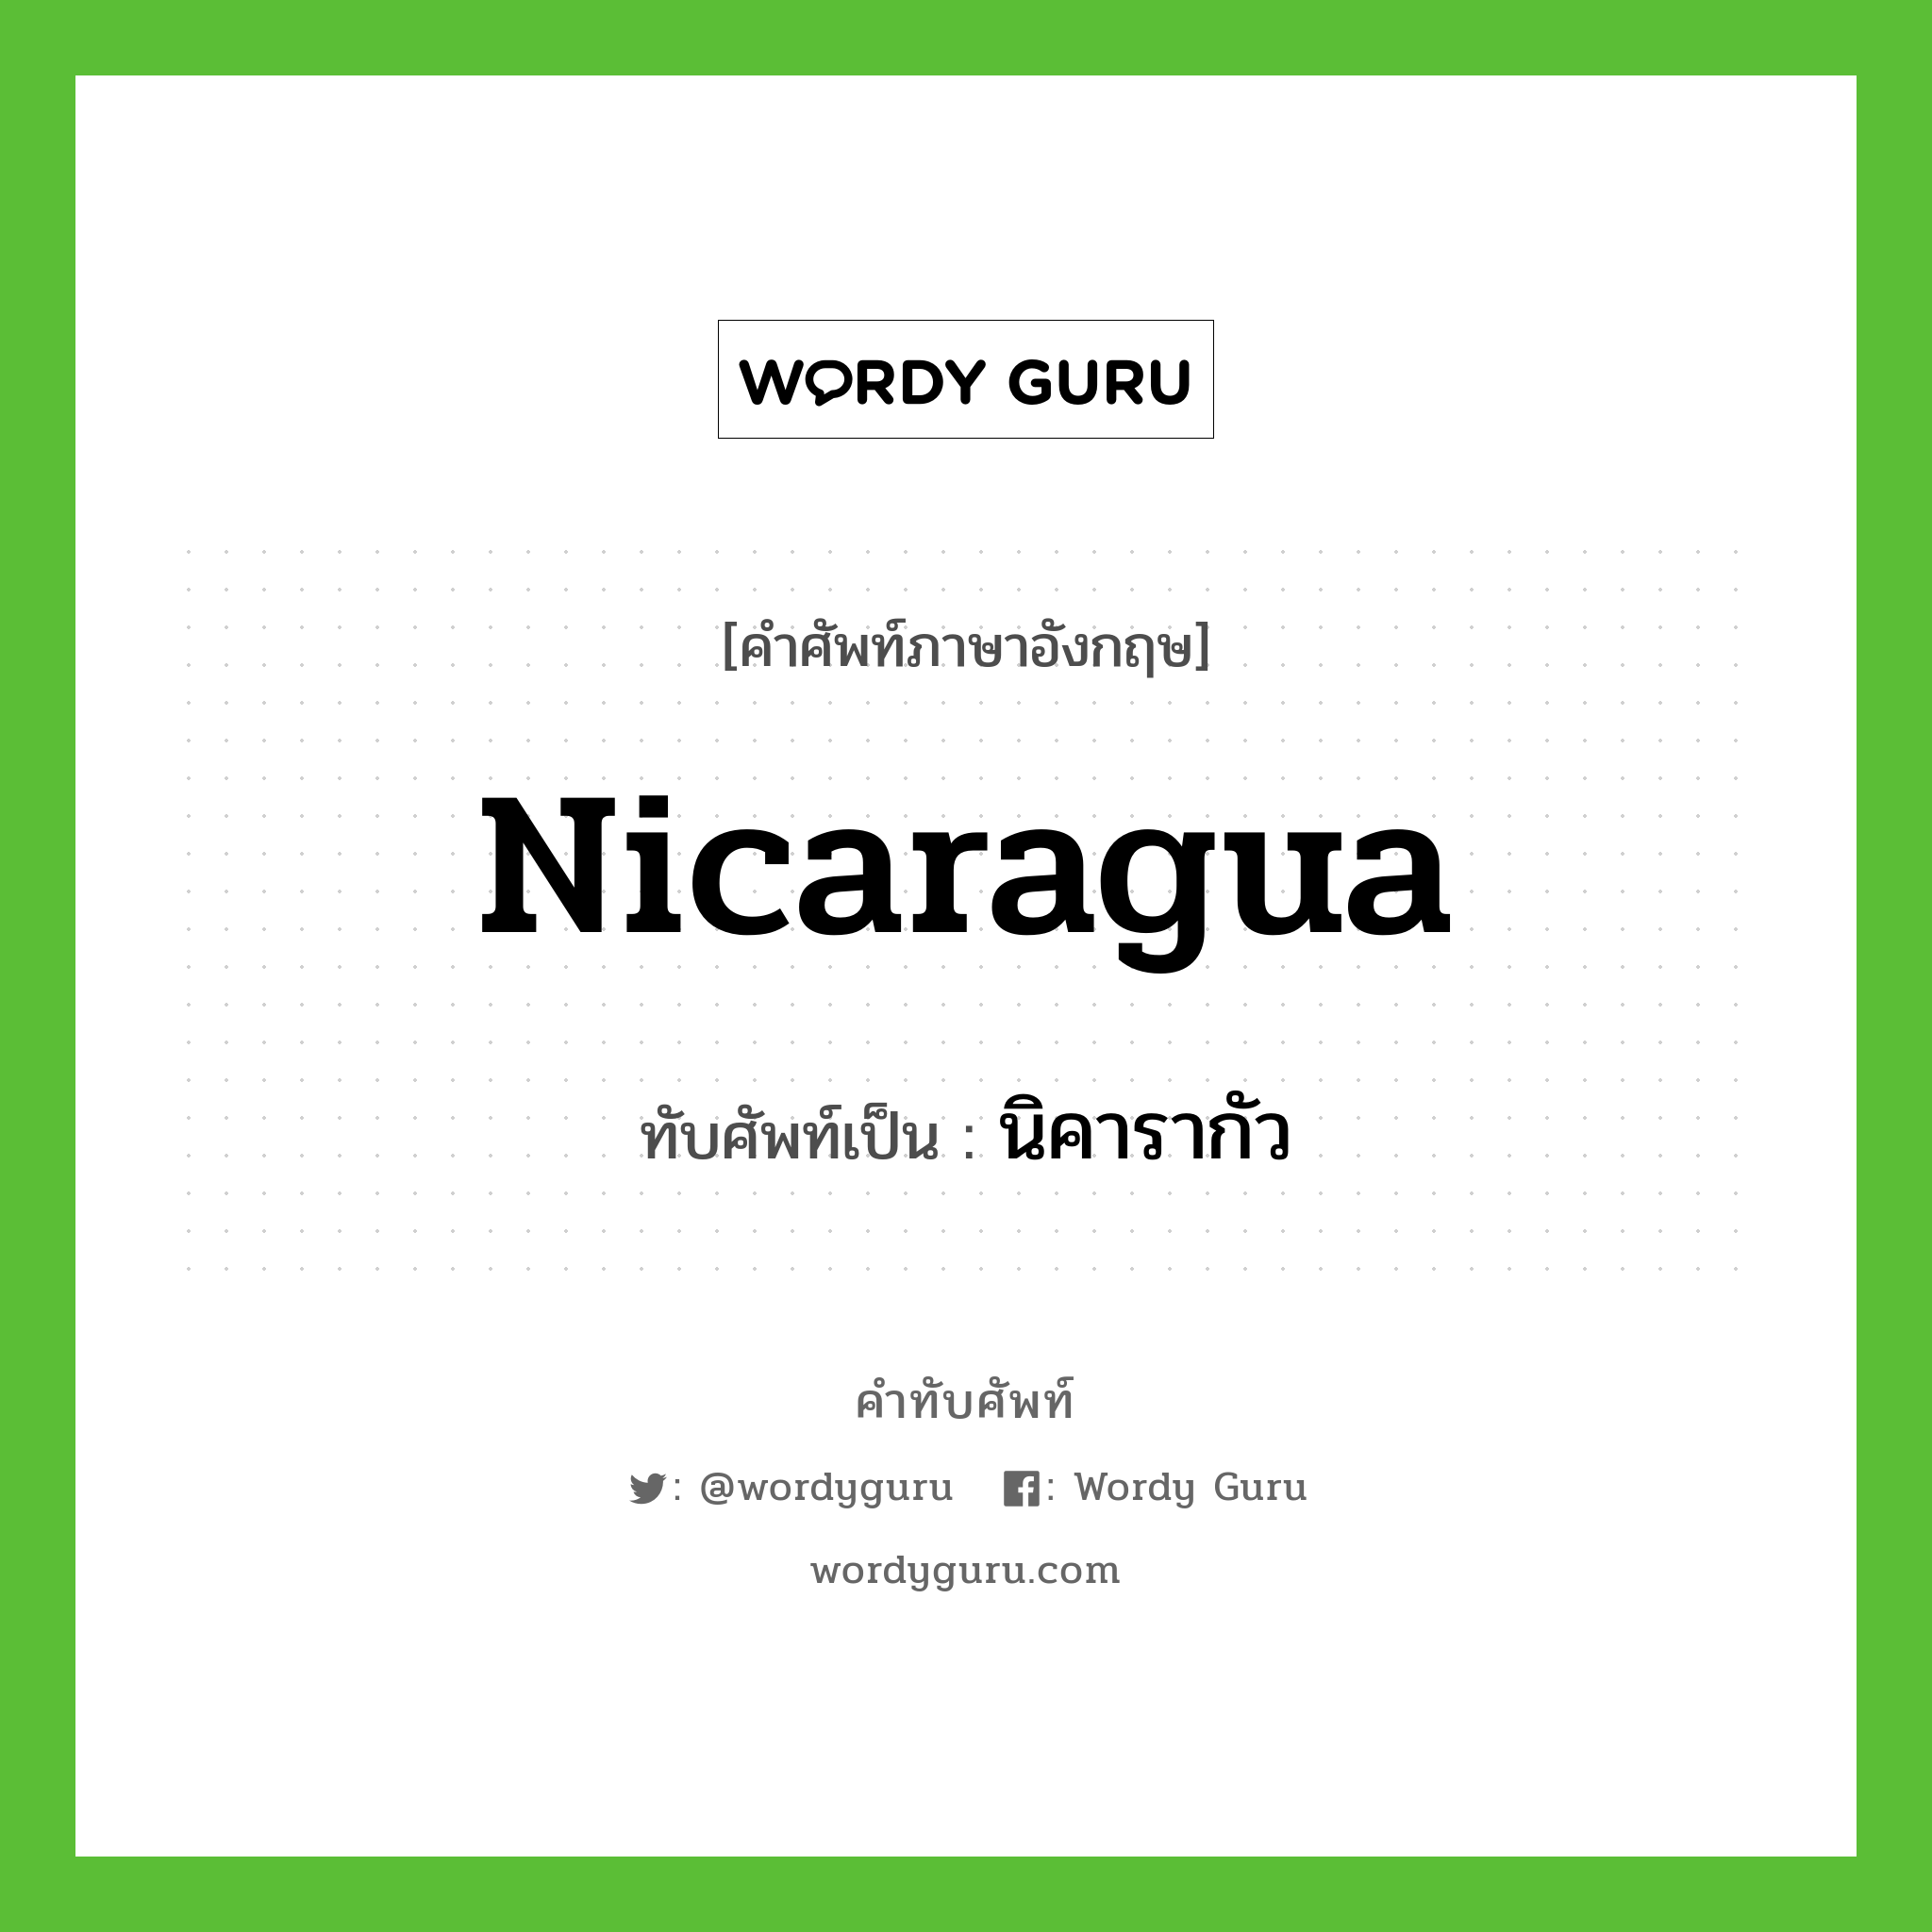 Nicaragua เขียนเป็นคำไทยว่าอะไร?, คำศัพท์ภาษาอังกฤษ Nicaragua ทับศัพท์เป็น นิคารากัว